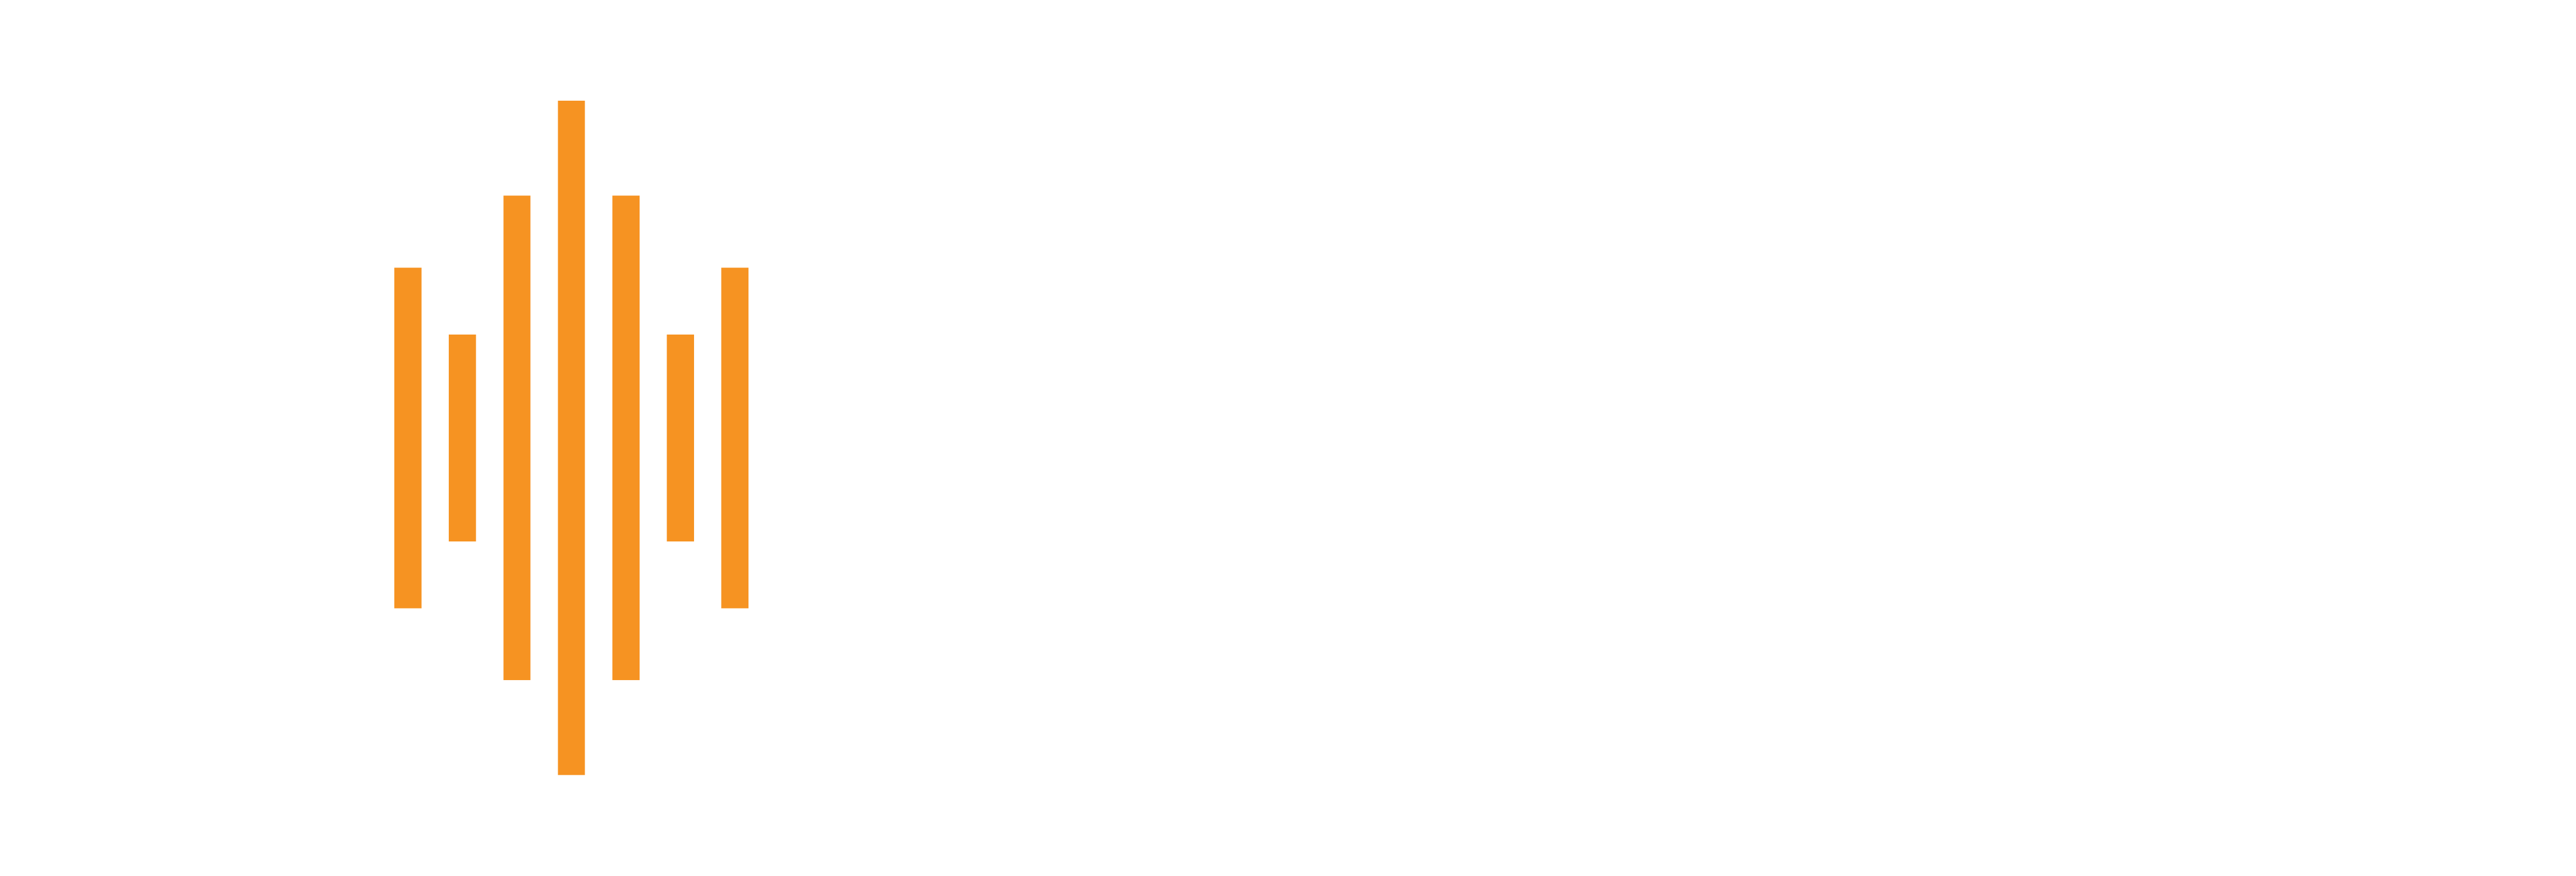 Concertos Astra-Finamax